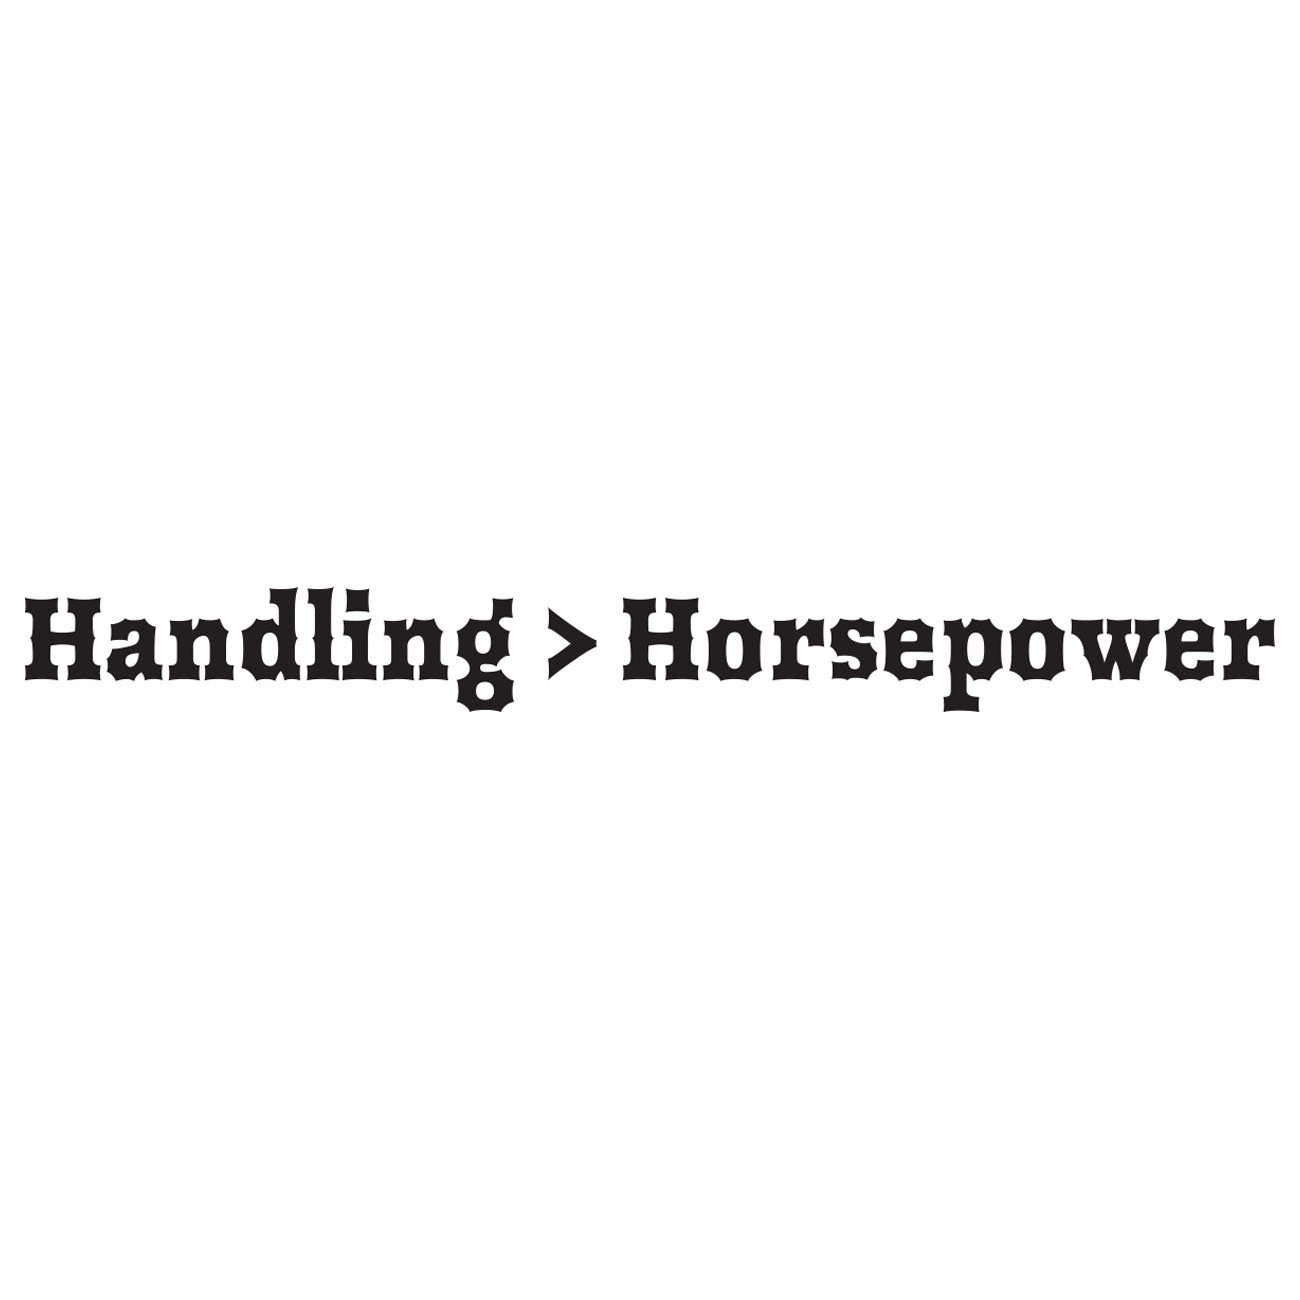 Handling over horsepower 2